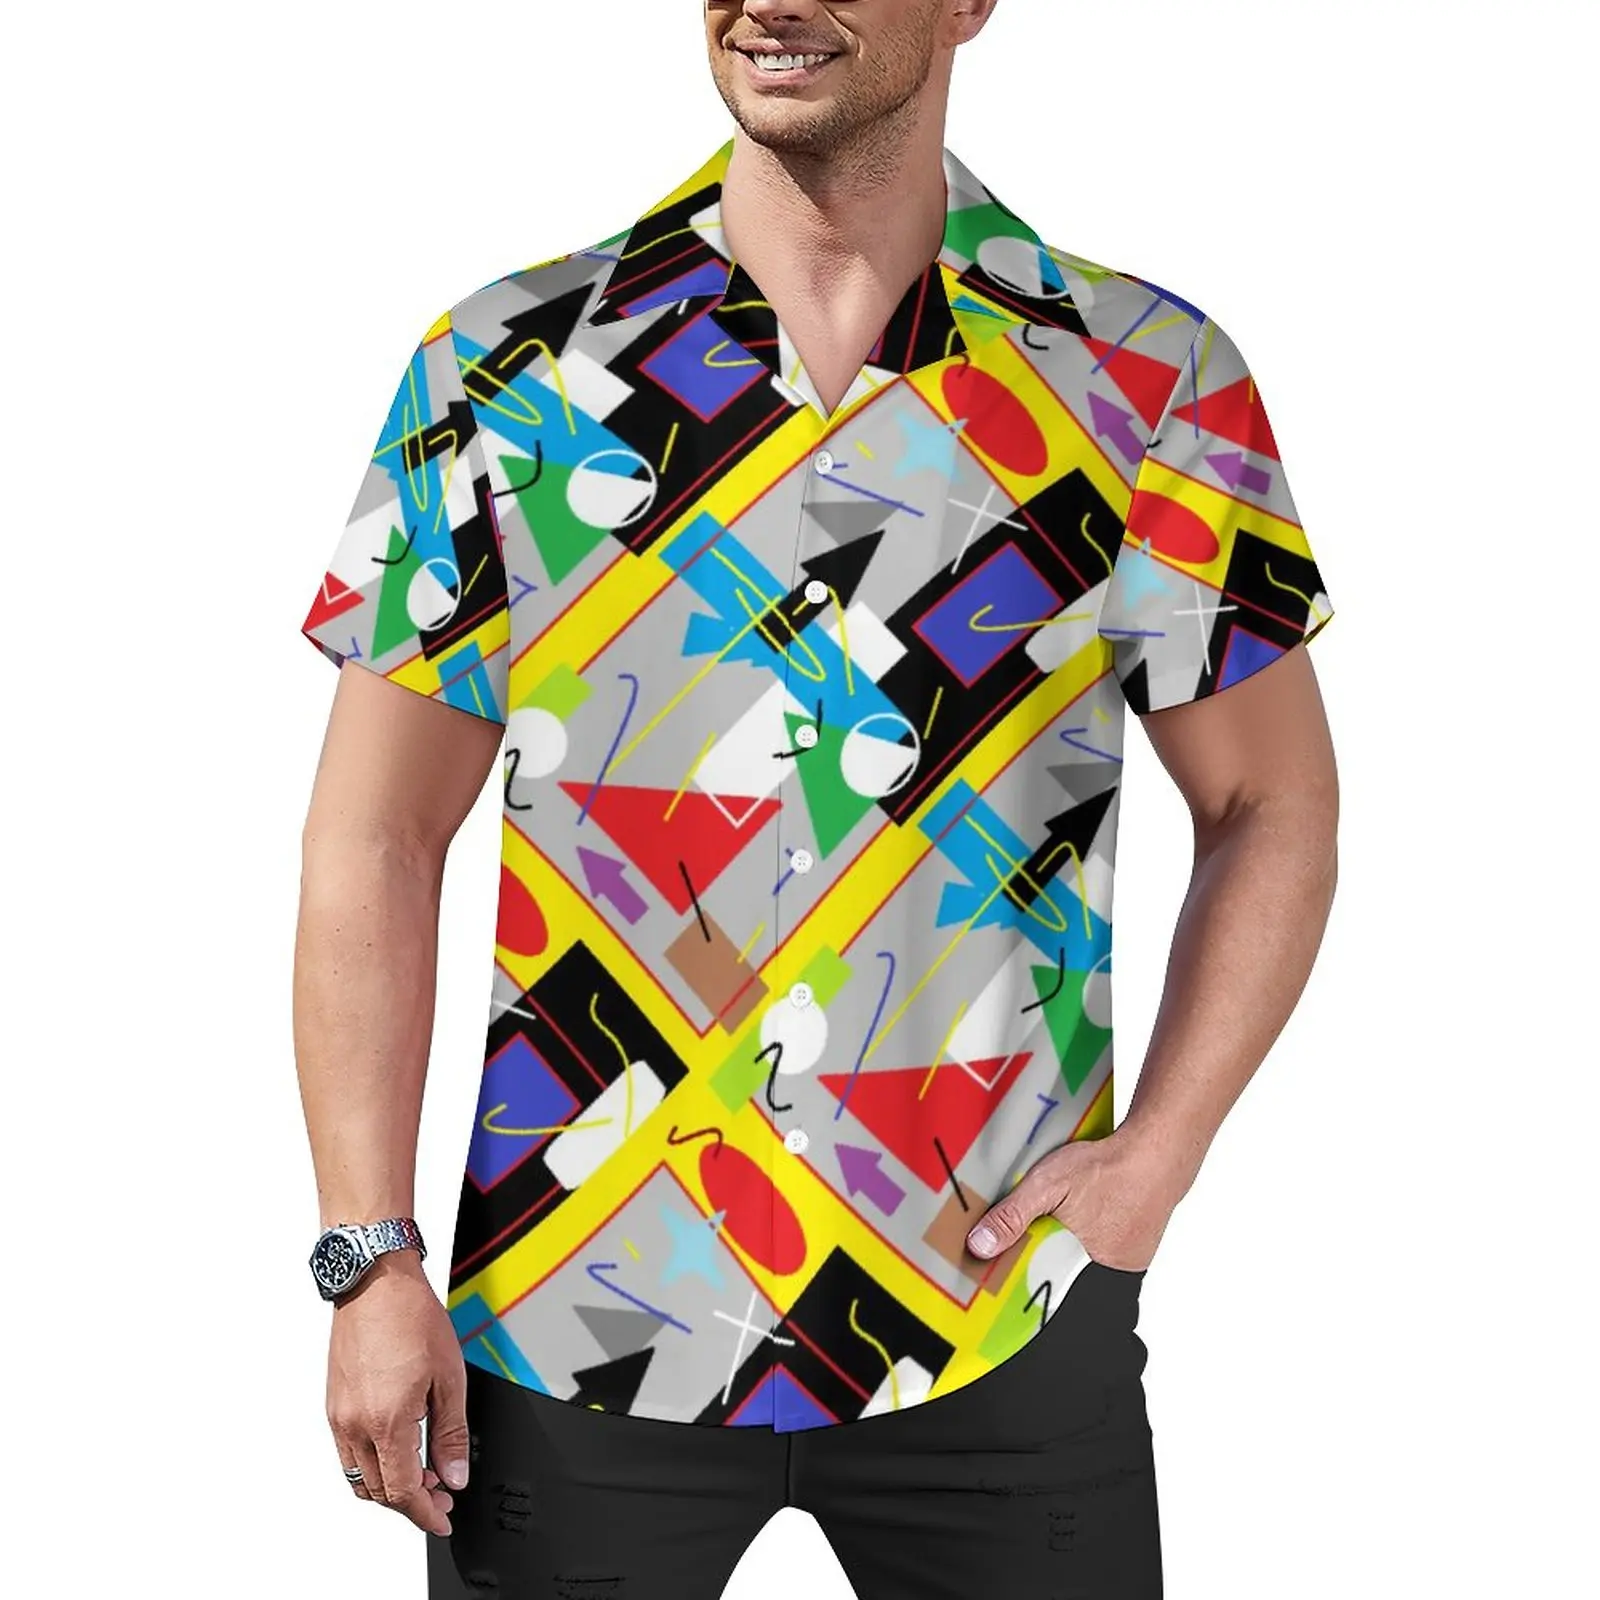 

Повседневная рубашка с геометрическим абстрактным рисунком, забавная пляжная Свободная рубашка, летние новые блузки, дизайнерский Топ большого размера с коротким рукавом